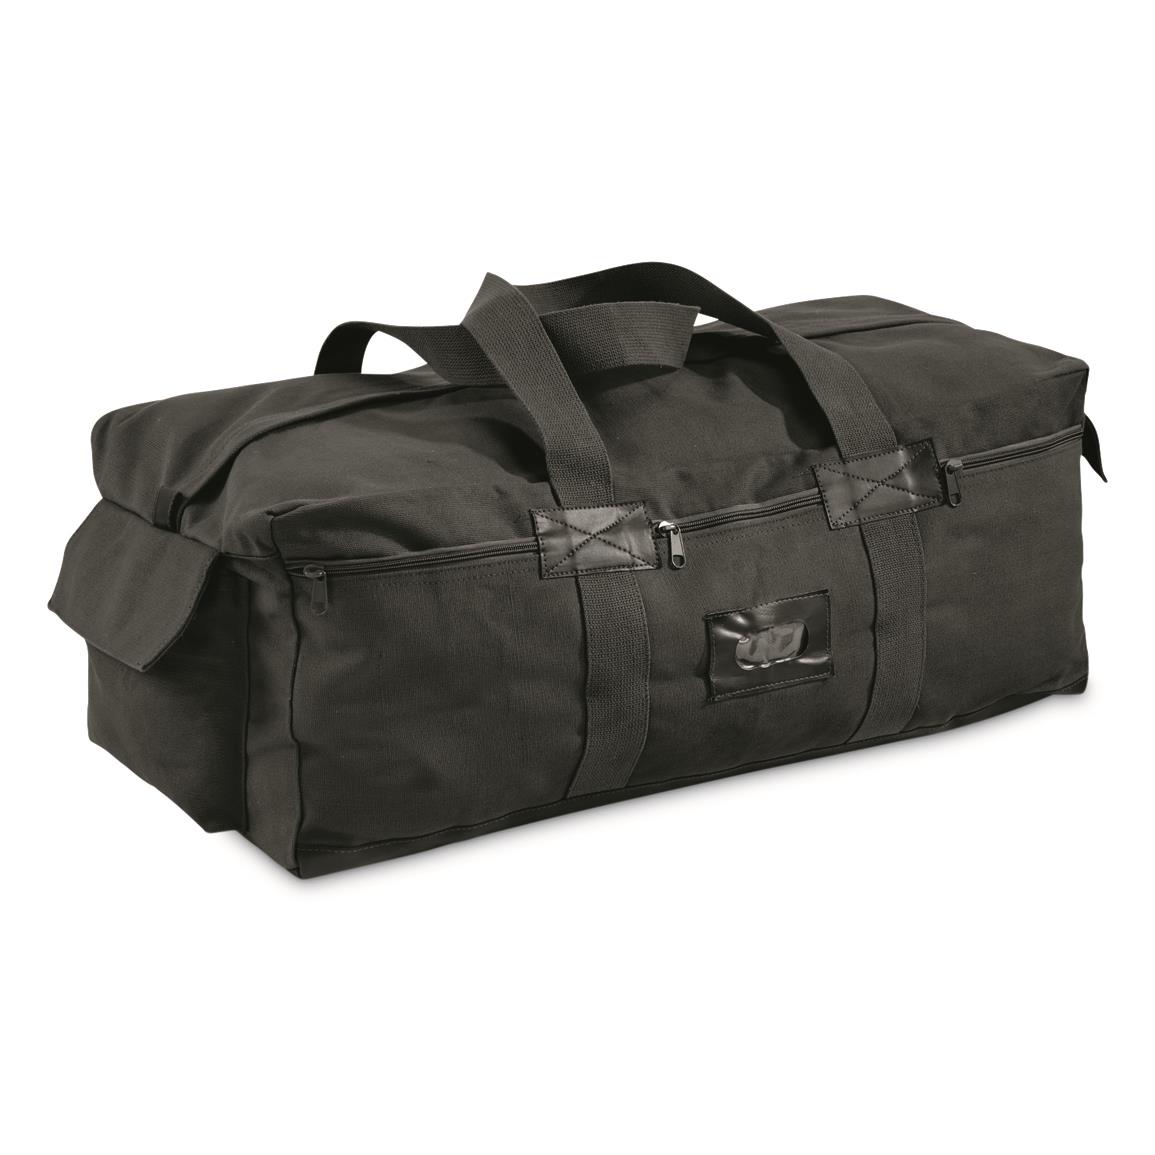 Brooklyn Armed Forces IDF Style Duffel Bag, Black